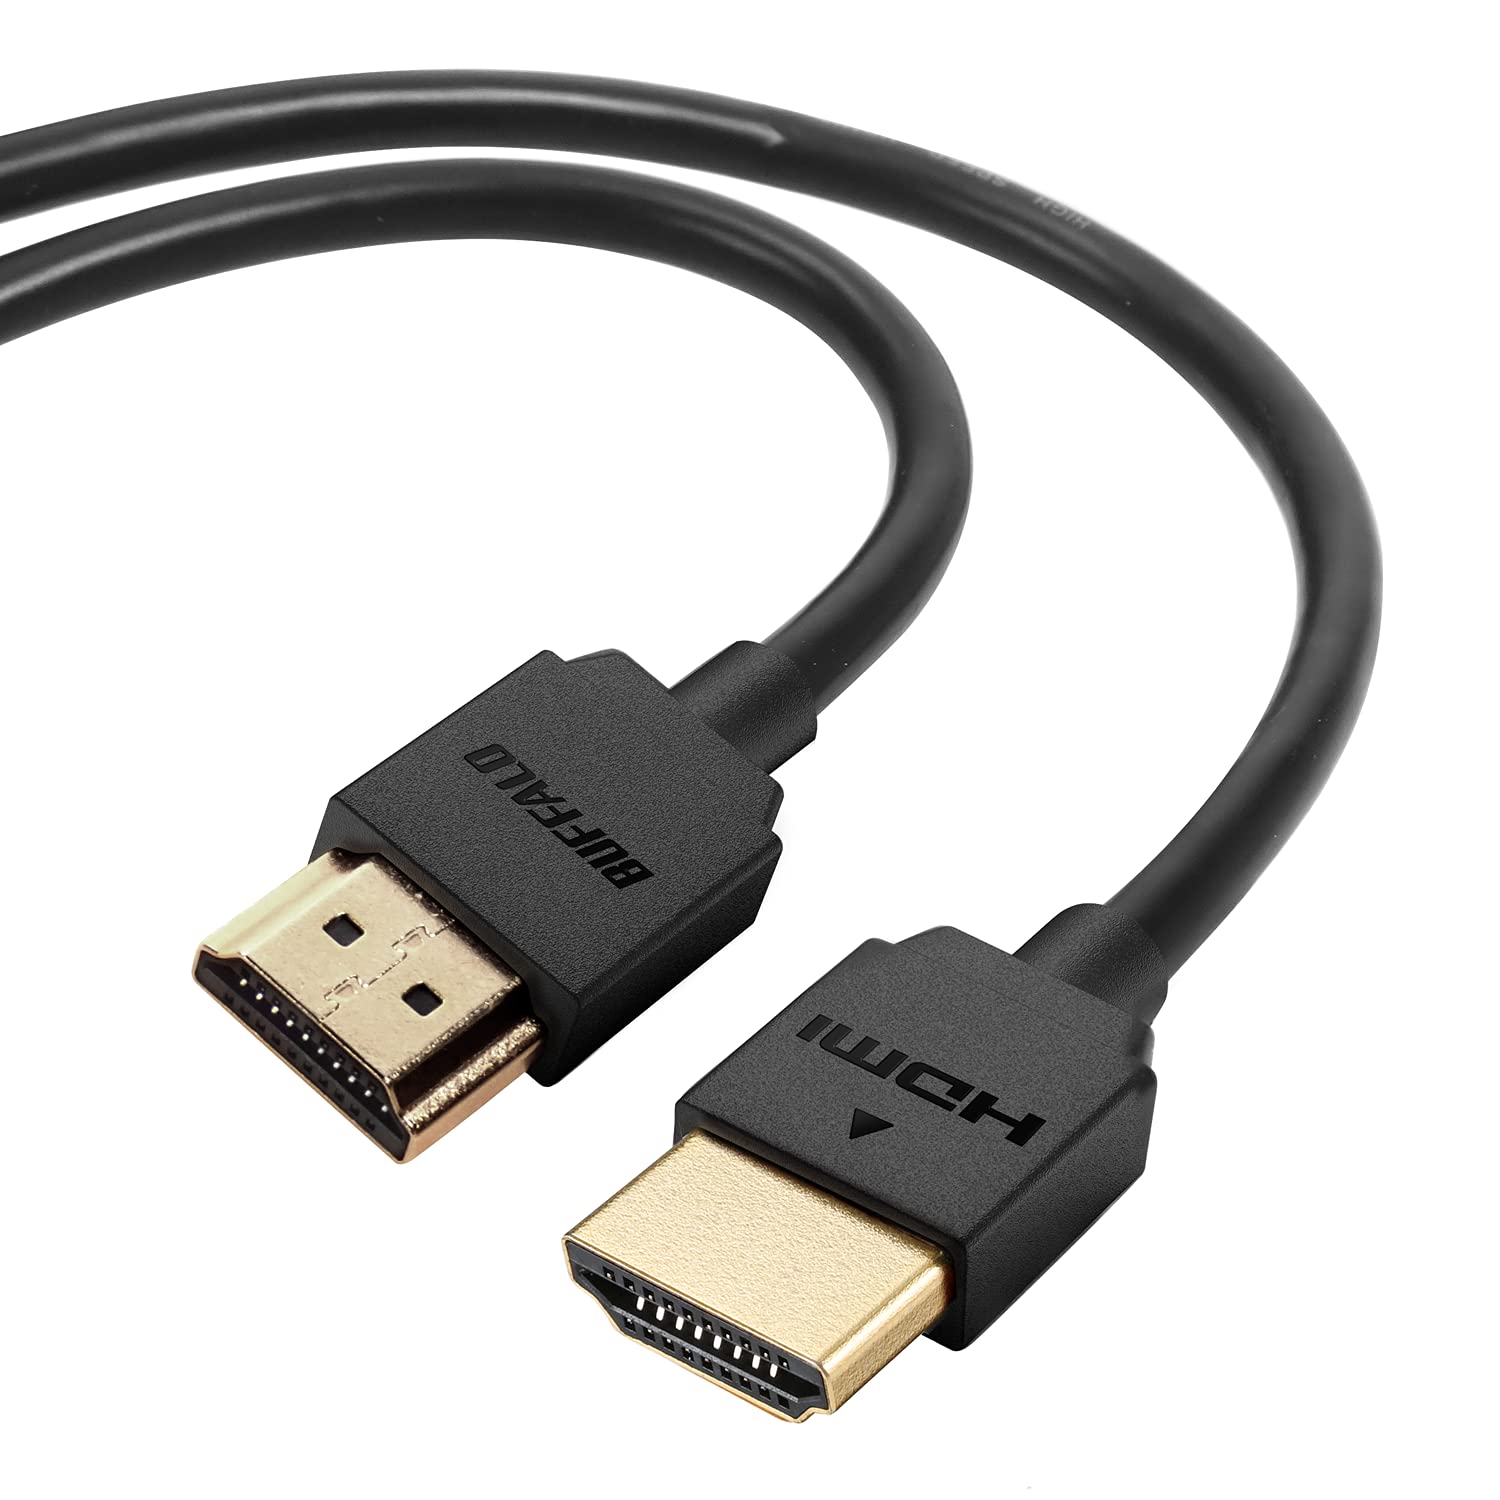 バッファロー HDMI やわらか ケーブル 2m ARC 対応 4K × 2K 対応 HIGH SPEED with Ethernet 認証品 BHDY20BK/N